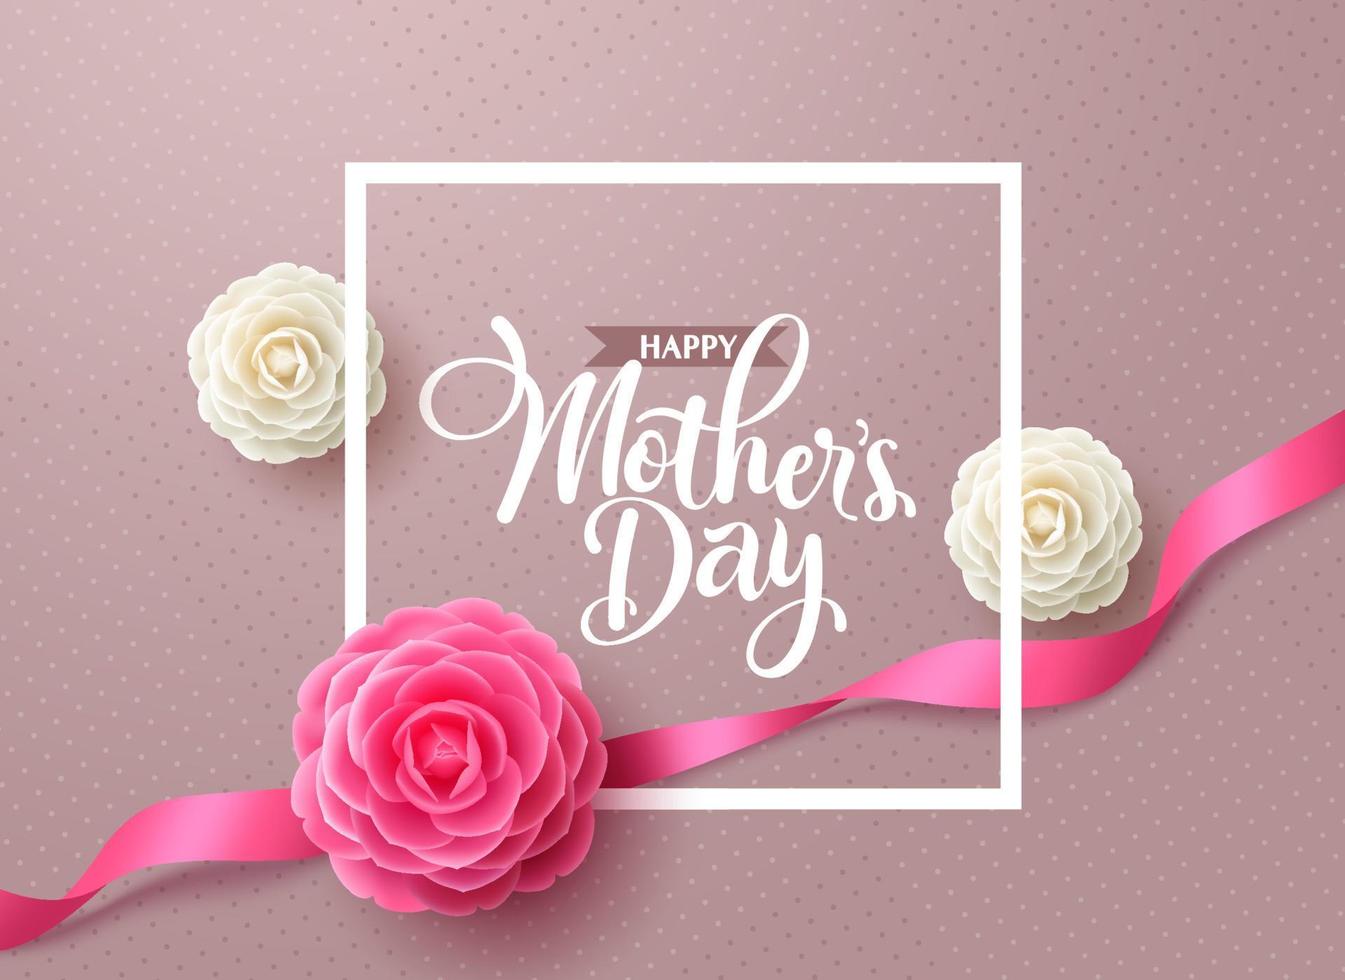 Muttertag Vektor Hintergrunddesign. Happy Mother's Day Grußtext mit Kamelienblüte in elegantem Muster für die internationale Muttertagskartendekoration. Vektor-Illustration.